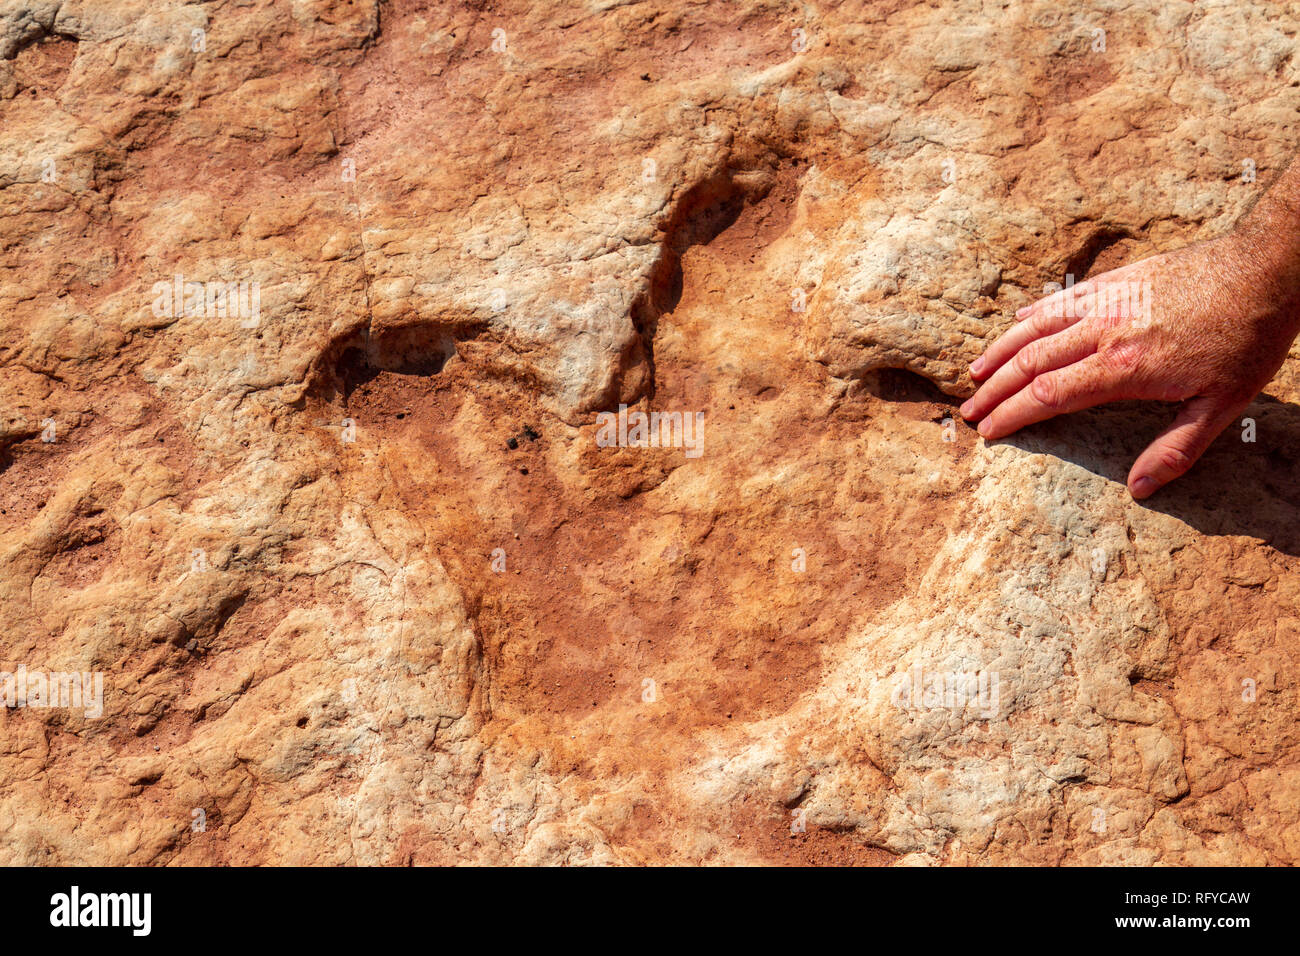 Chiudere fino a tre toed tracce di dinosauri, con una mano umana per la scala, all'Moenkopi tracce di dinosauri sito nelle vicinanze di Tuba City, Arizona, Stati Uniti. Foto Stock